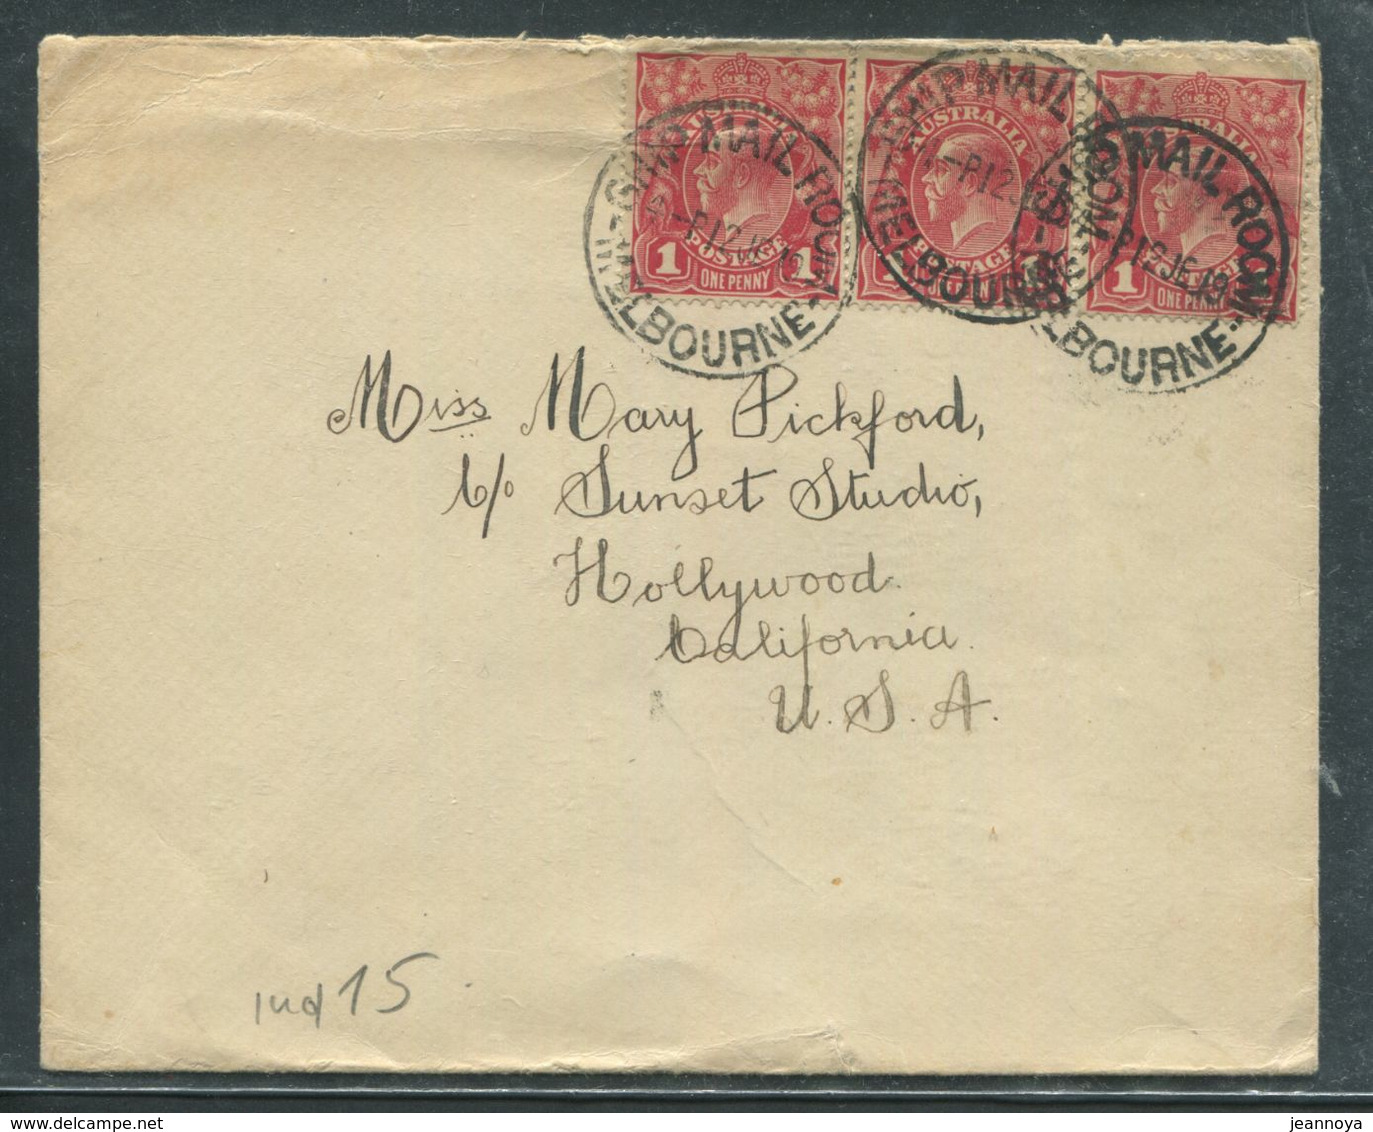 AUSTRALIE - N° 20 (3) / LETTRE OBL. " SHIP MAIL ROOM / MELBOURNE LE 12/6/1919 " POUR USA - TB - Covers & Documents